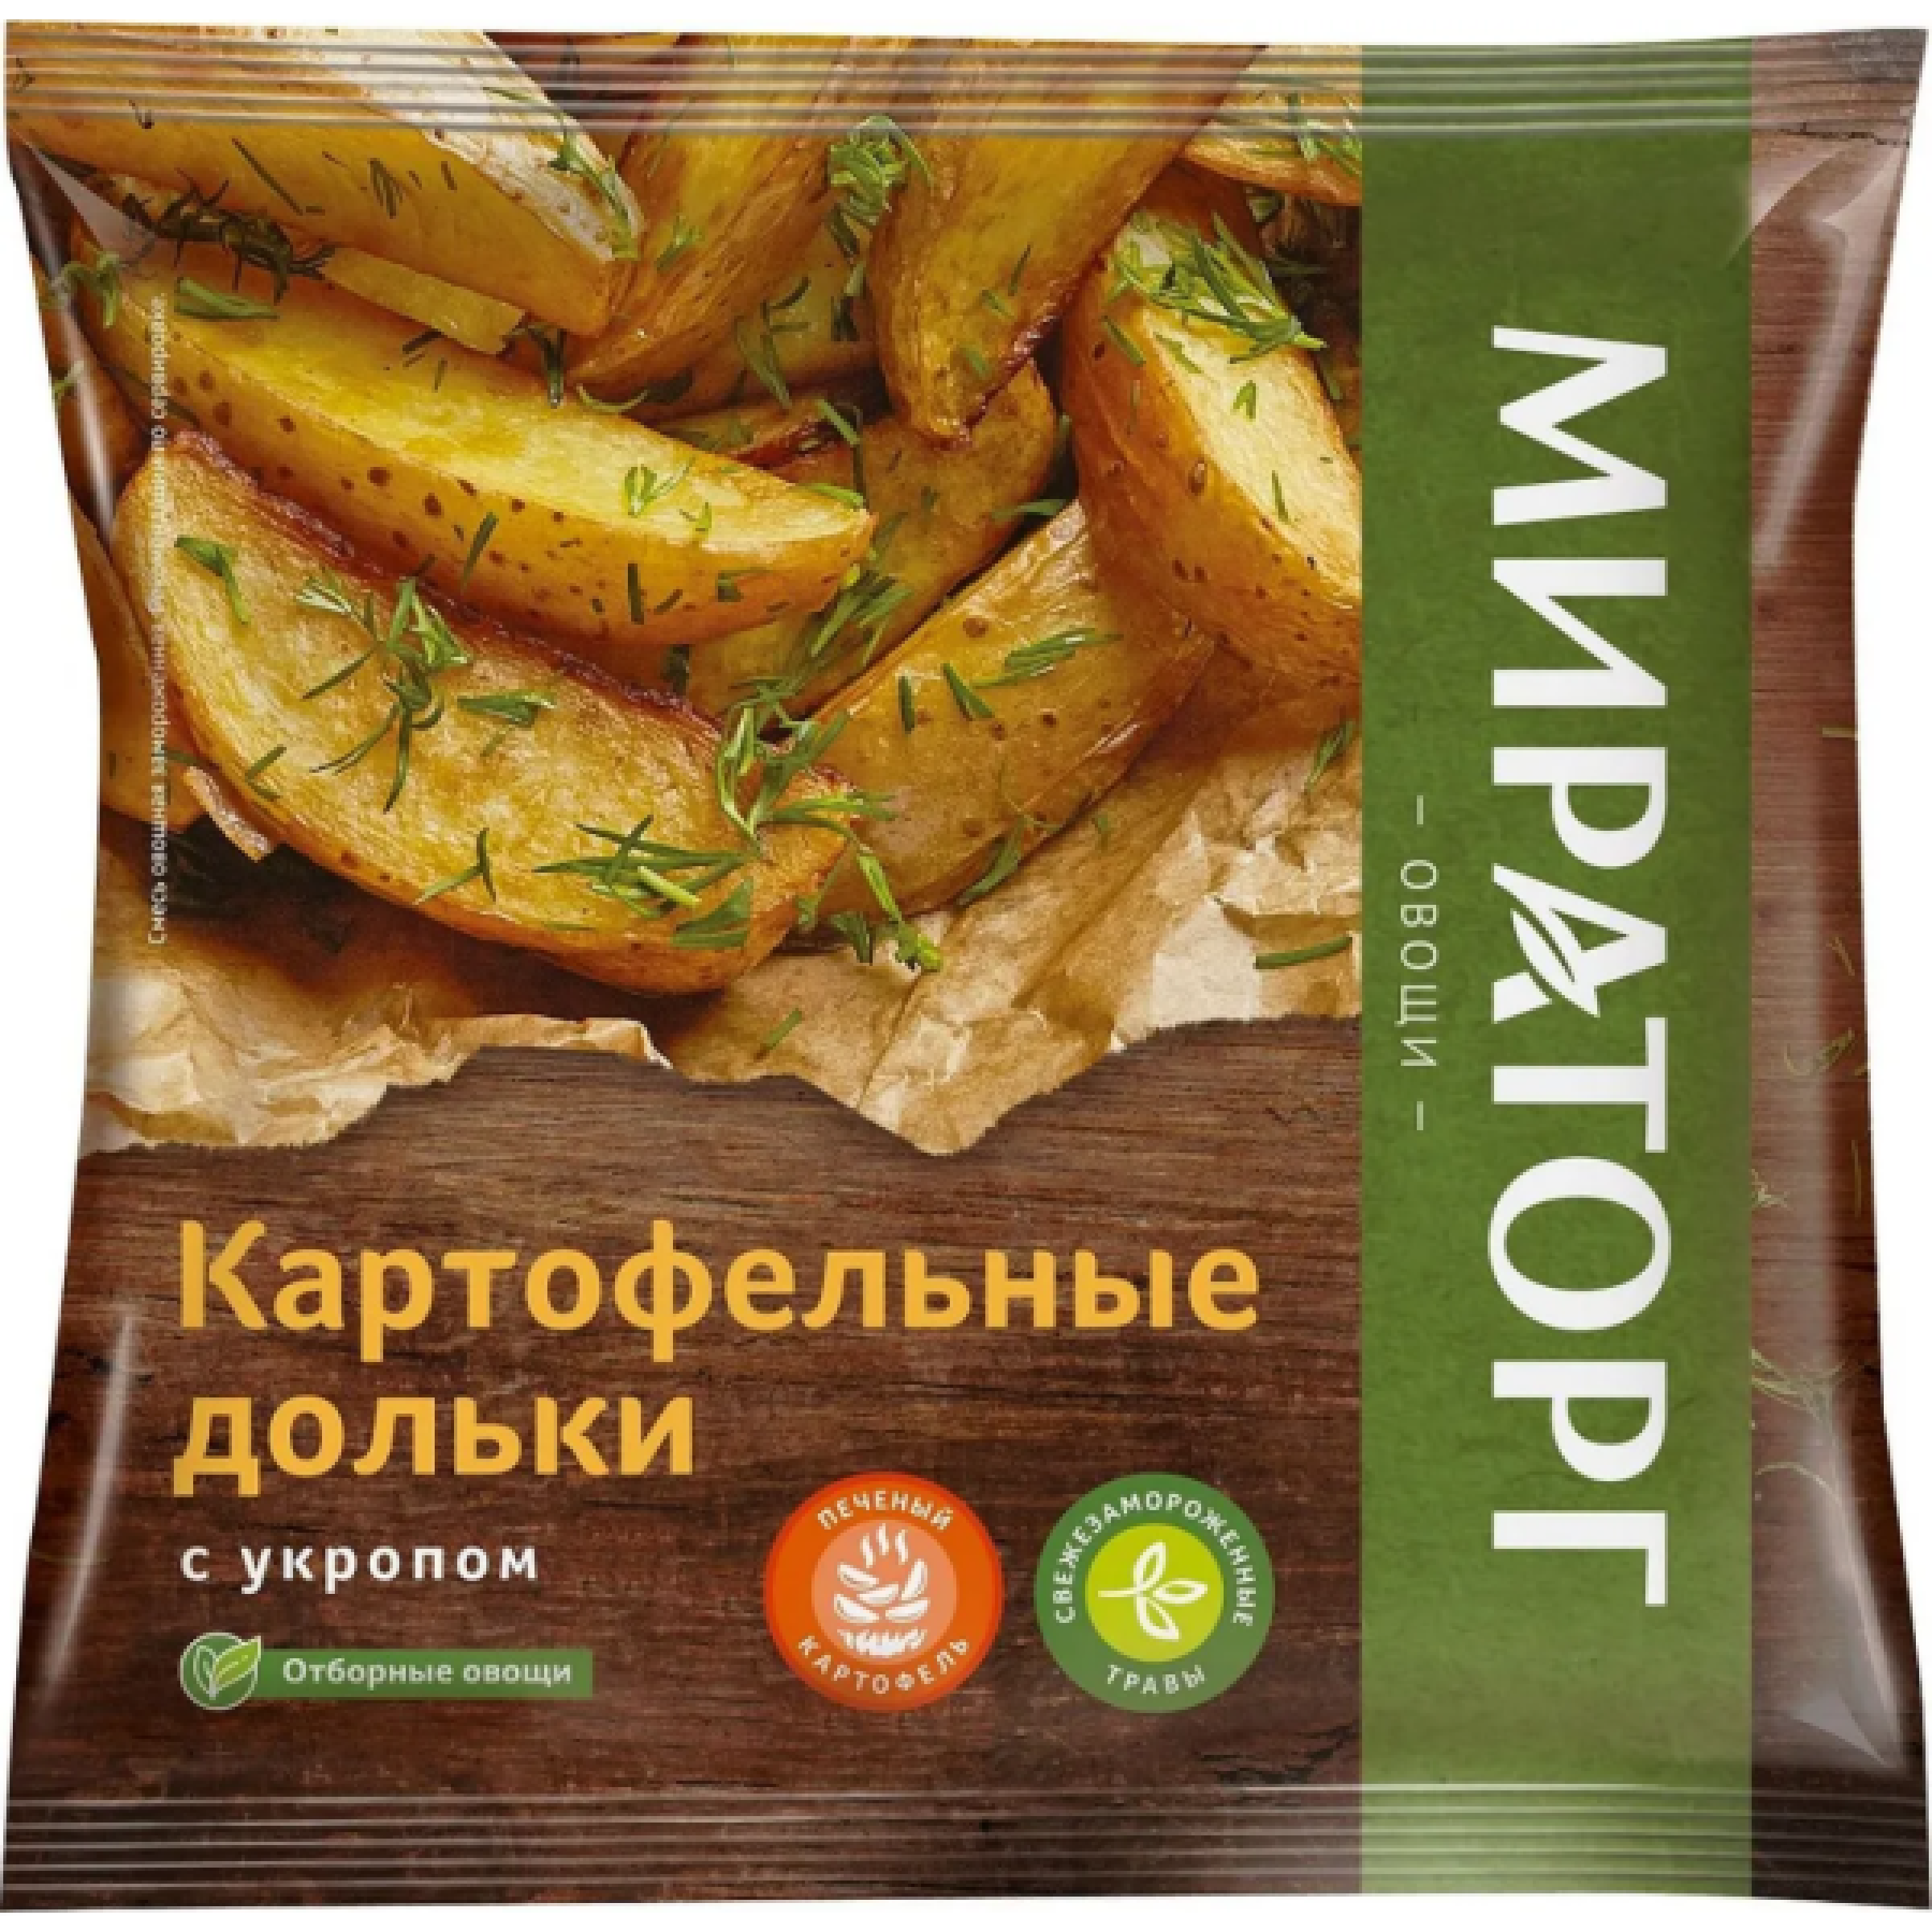 Картофельные дольки с укропом свежемороженные Vитамин, 400гр